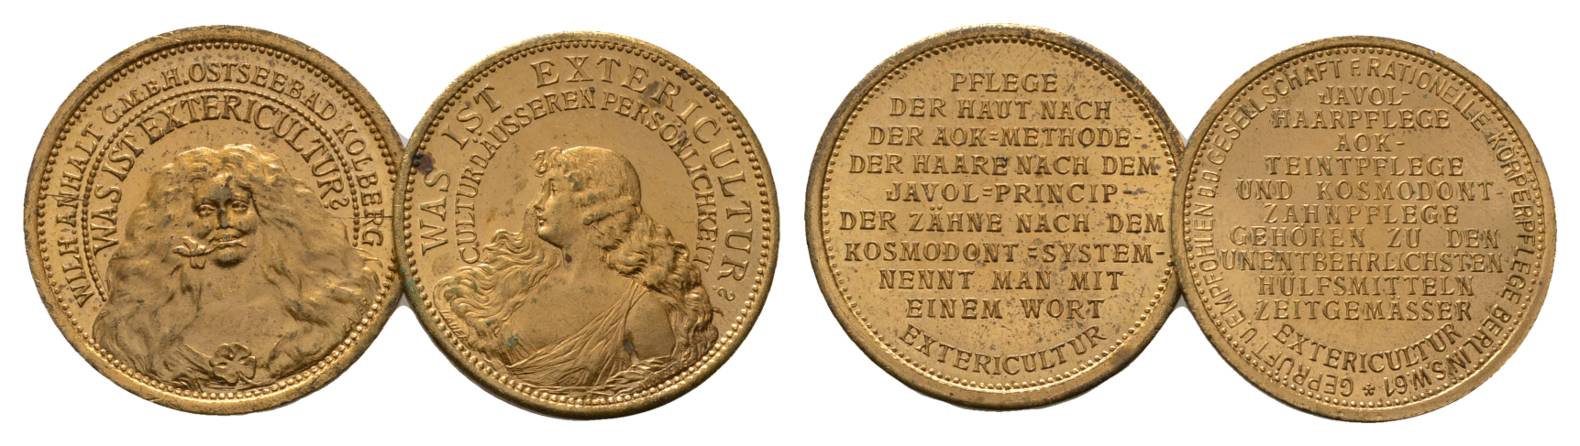  Pommern, Bronzemedaille, 2 Stück, 24 mm,(4,53 g, 4,79 g)   